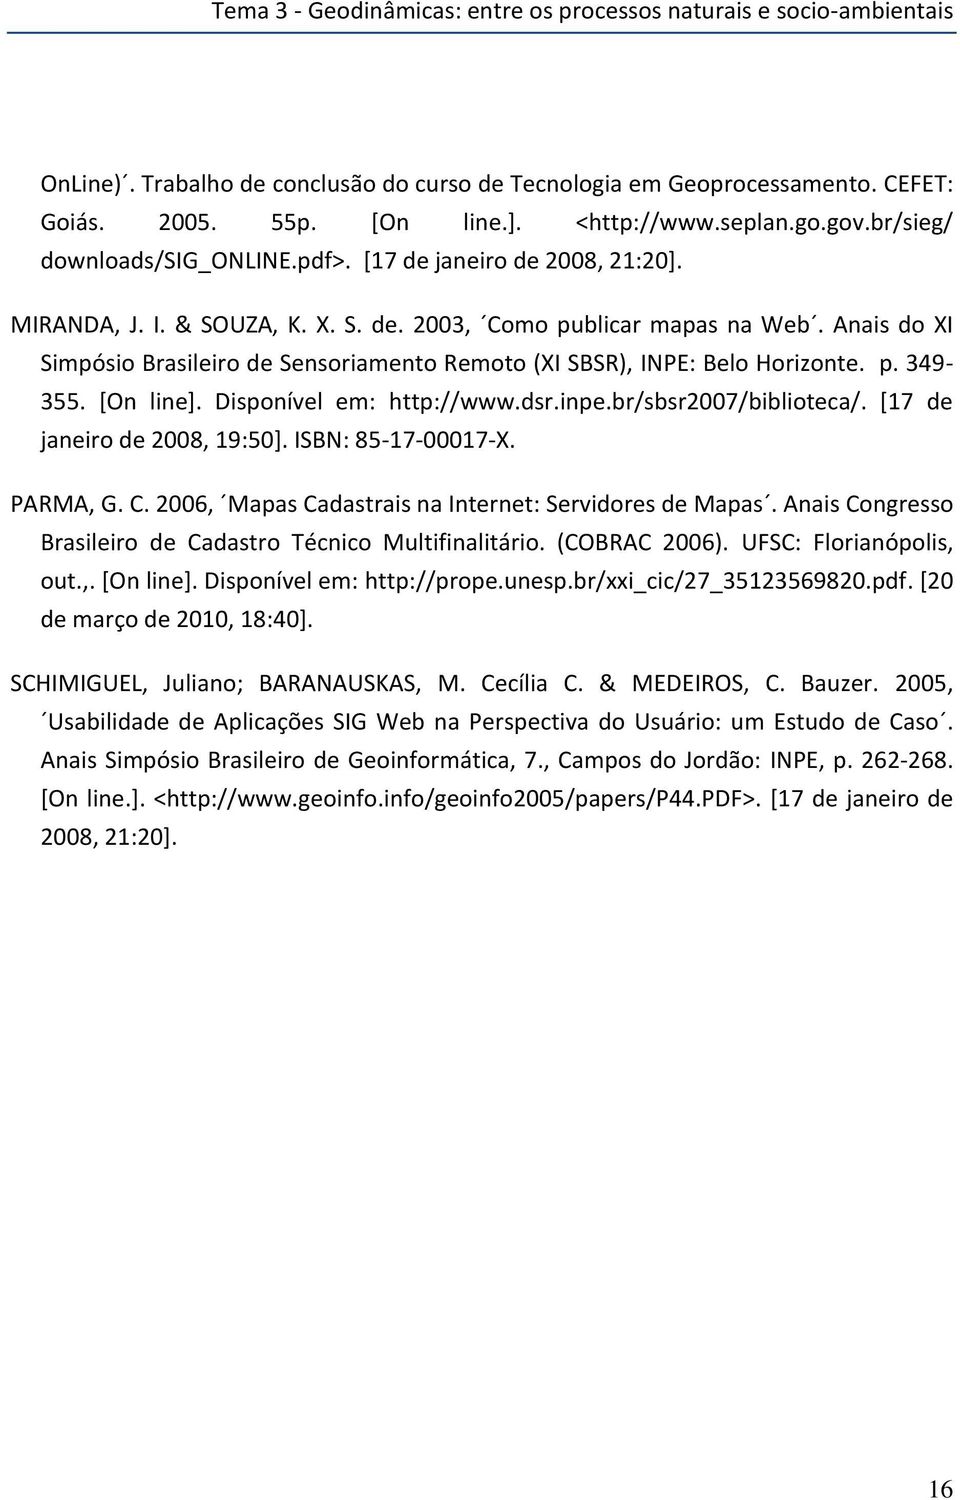 Anais do XI Simpósio Brasileiro de Sensoriamento Remoto (XI SBSR), INPE: Belo Horizonte. p. 349-355. [On line]. Disponível em: http://www.dsr.inpe.br/sbsr2007/biblioteca/.